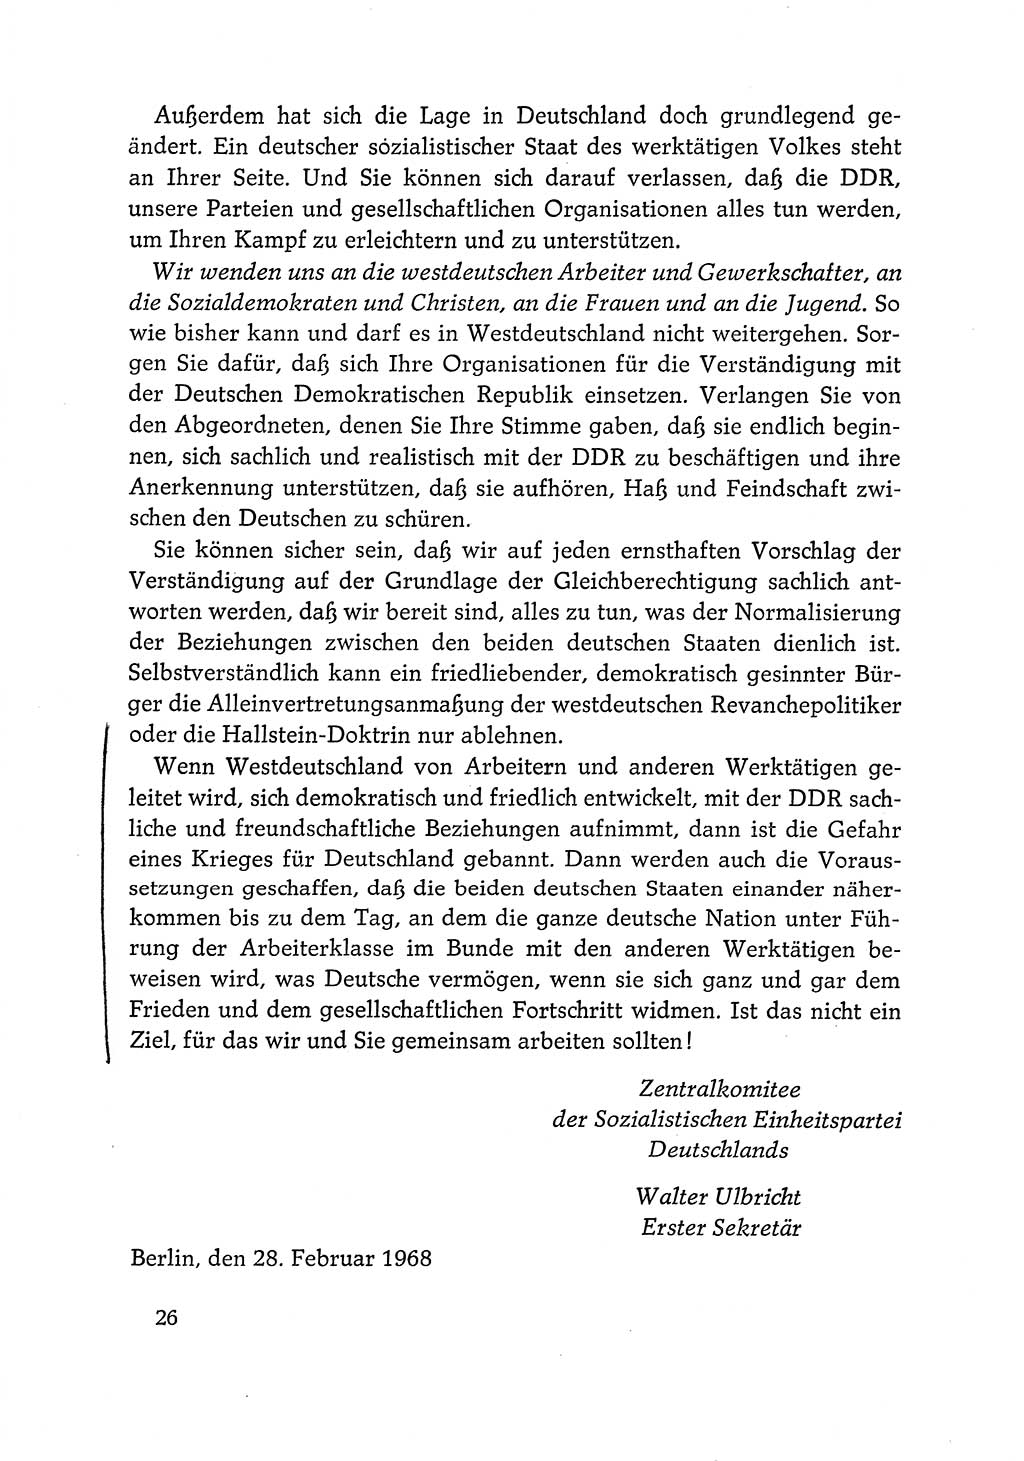 Dokumente der Sozialistischen Einheitspartei Deutschlands (SED) [Deutsche Demokratische Republik (DDR)] 1968-1969, Seite 26 (Dok. SED DDR 1968-1969, S. 26)